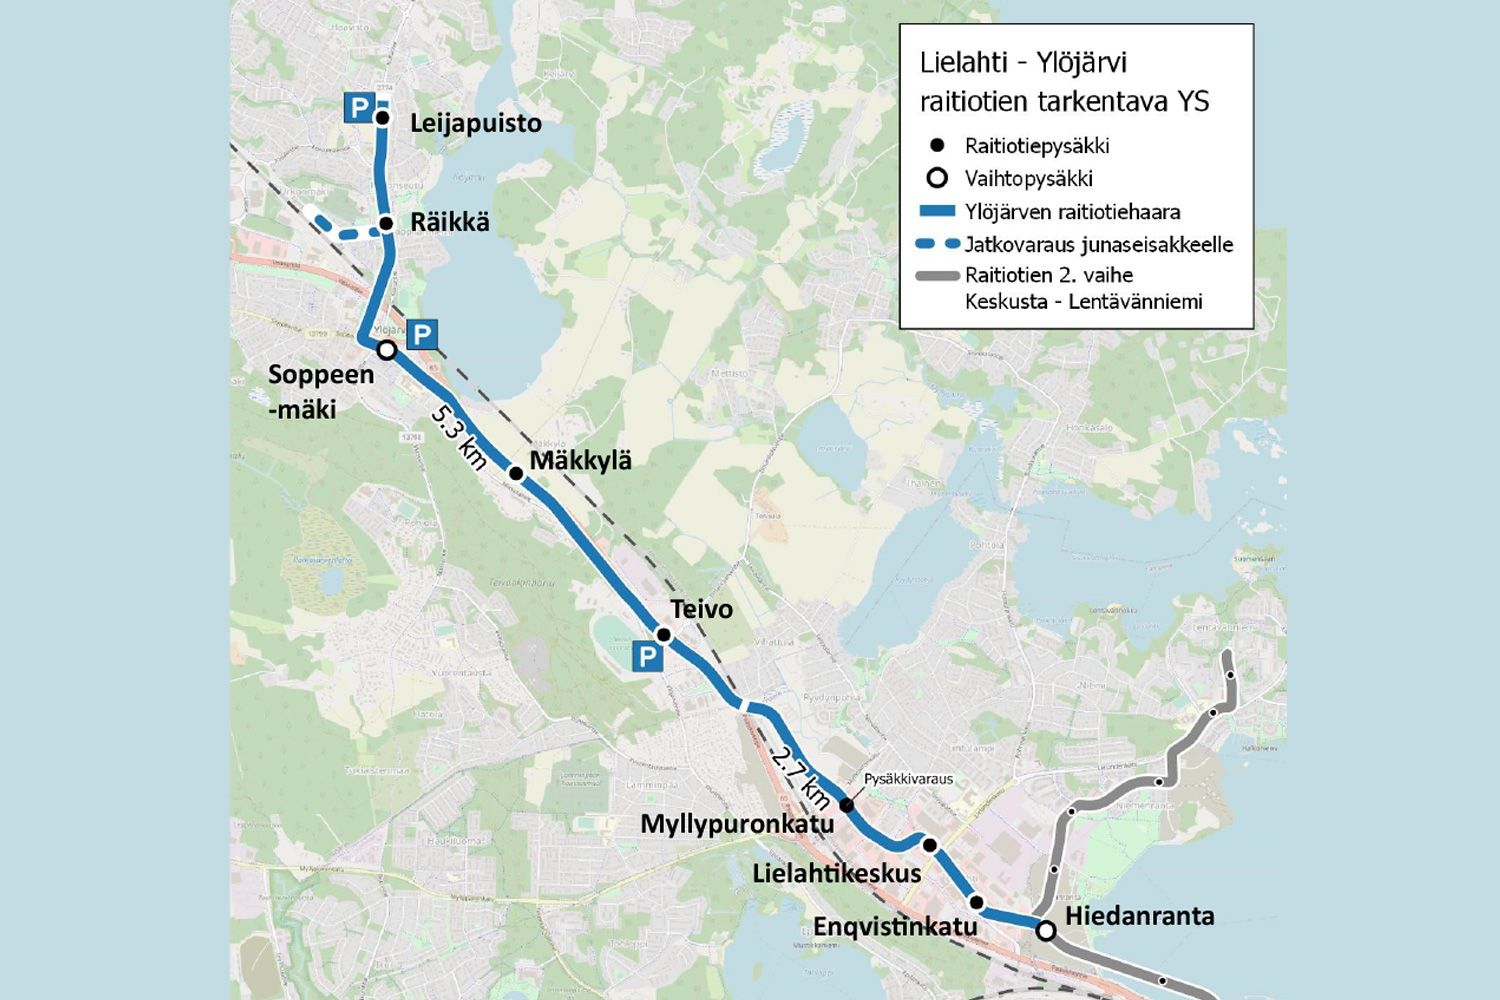 Raitiotien Lielahden ja Ylöjärven suunnan pysäkkien sijainnit ja keskeisimmät linjaukset on päätetty